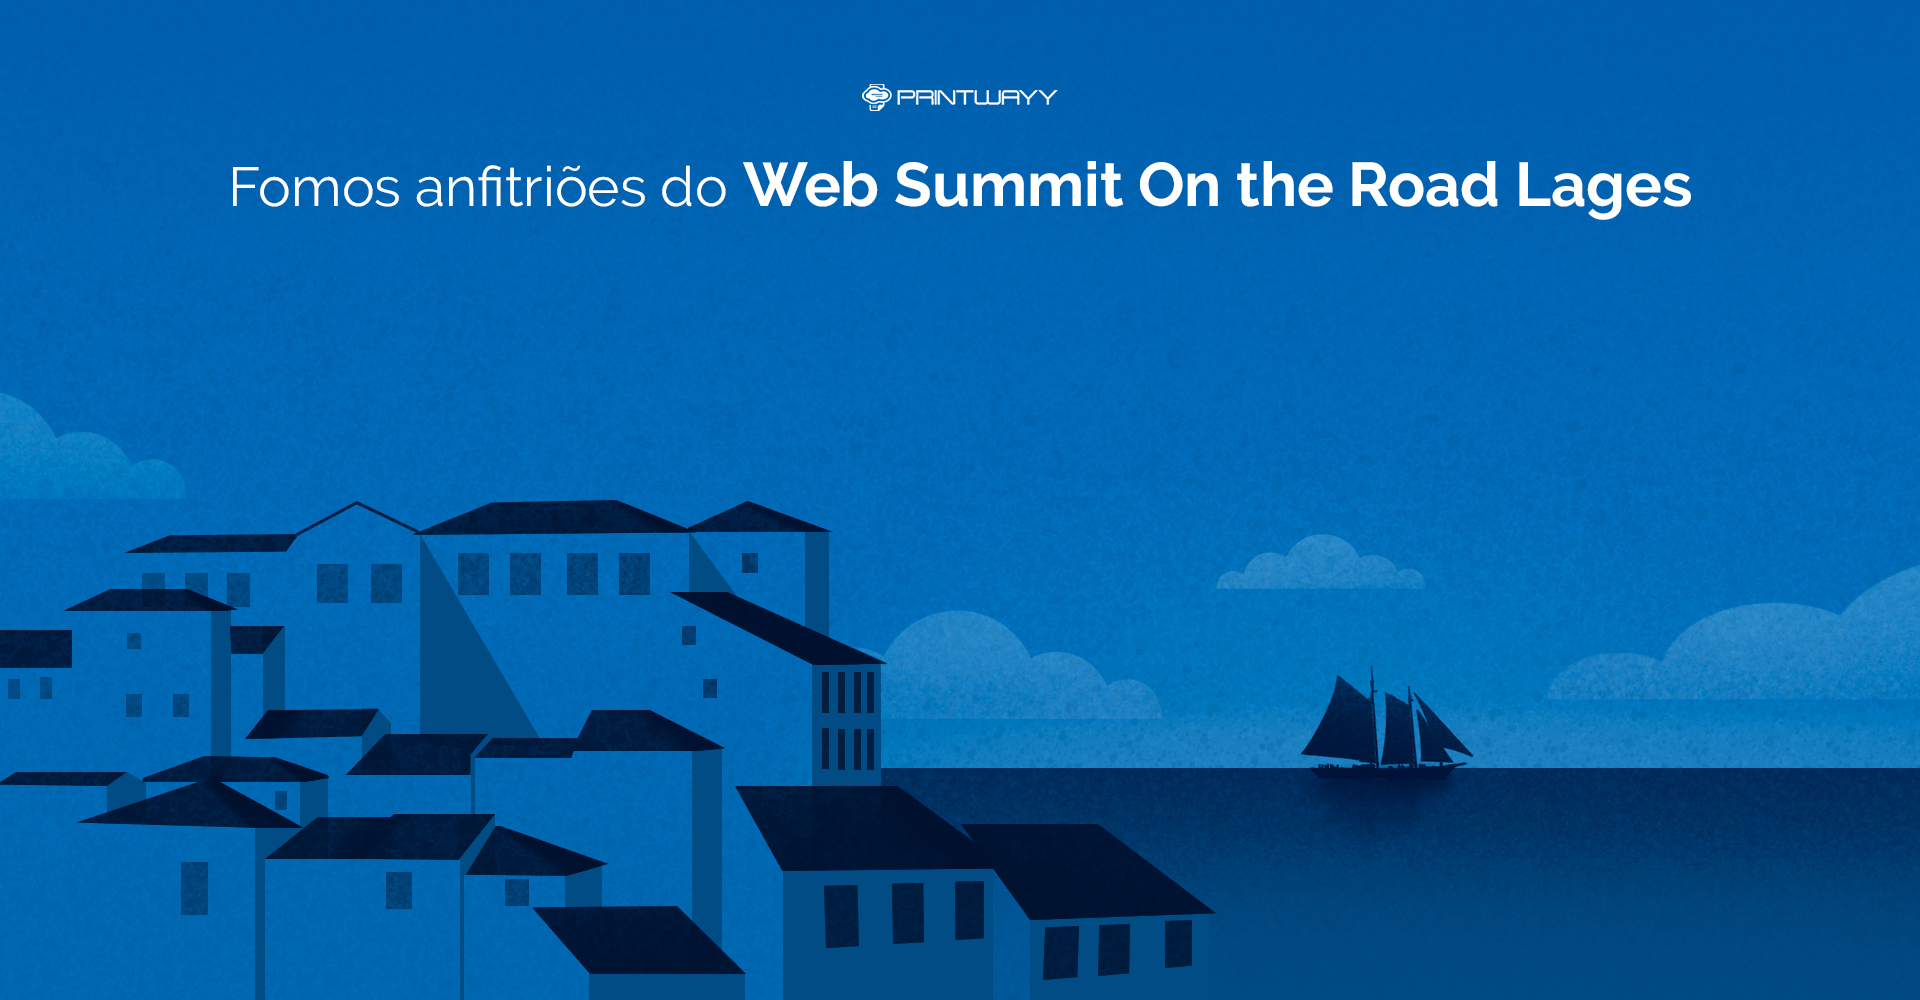 Ilustração de uma paisagem portuguesa, para representar o Web Summit que acontece em Lisboa - Portugal